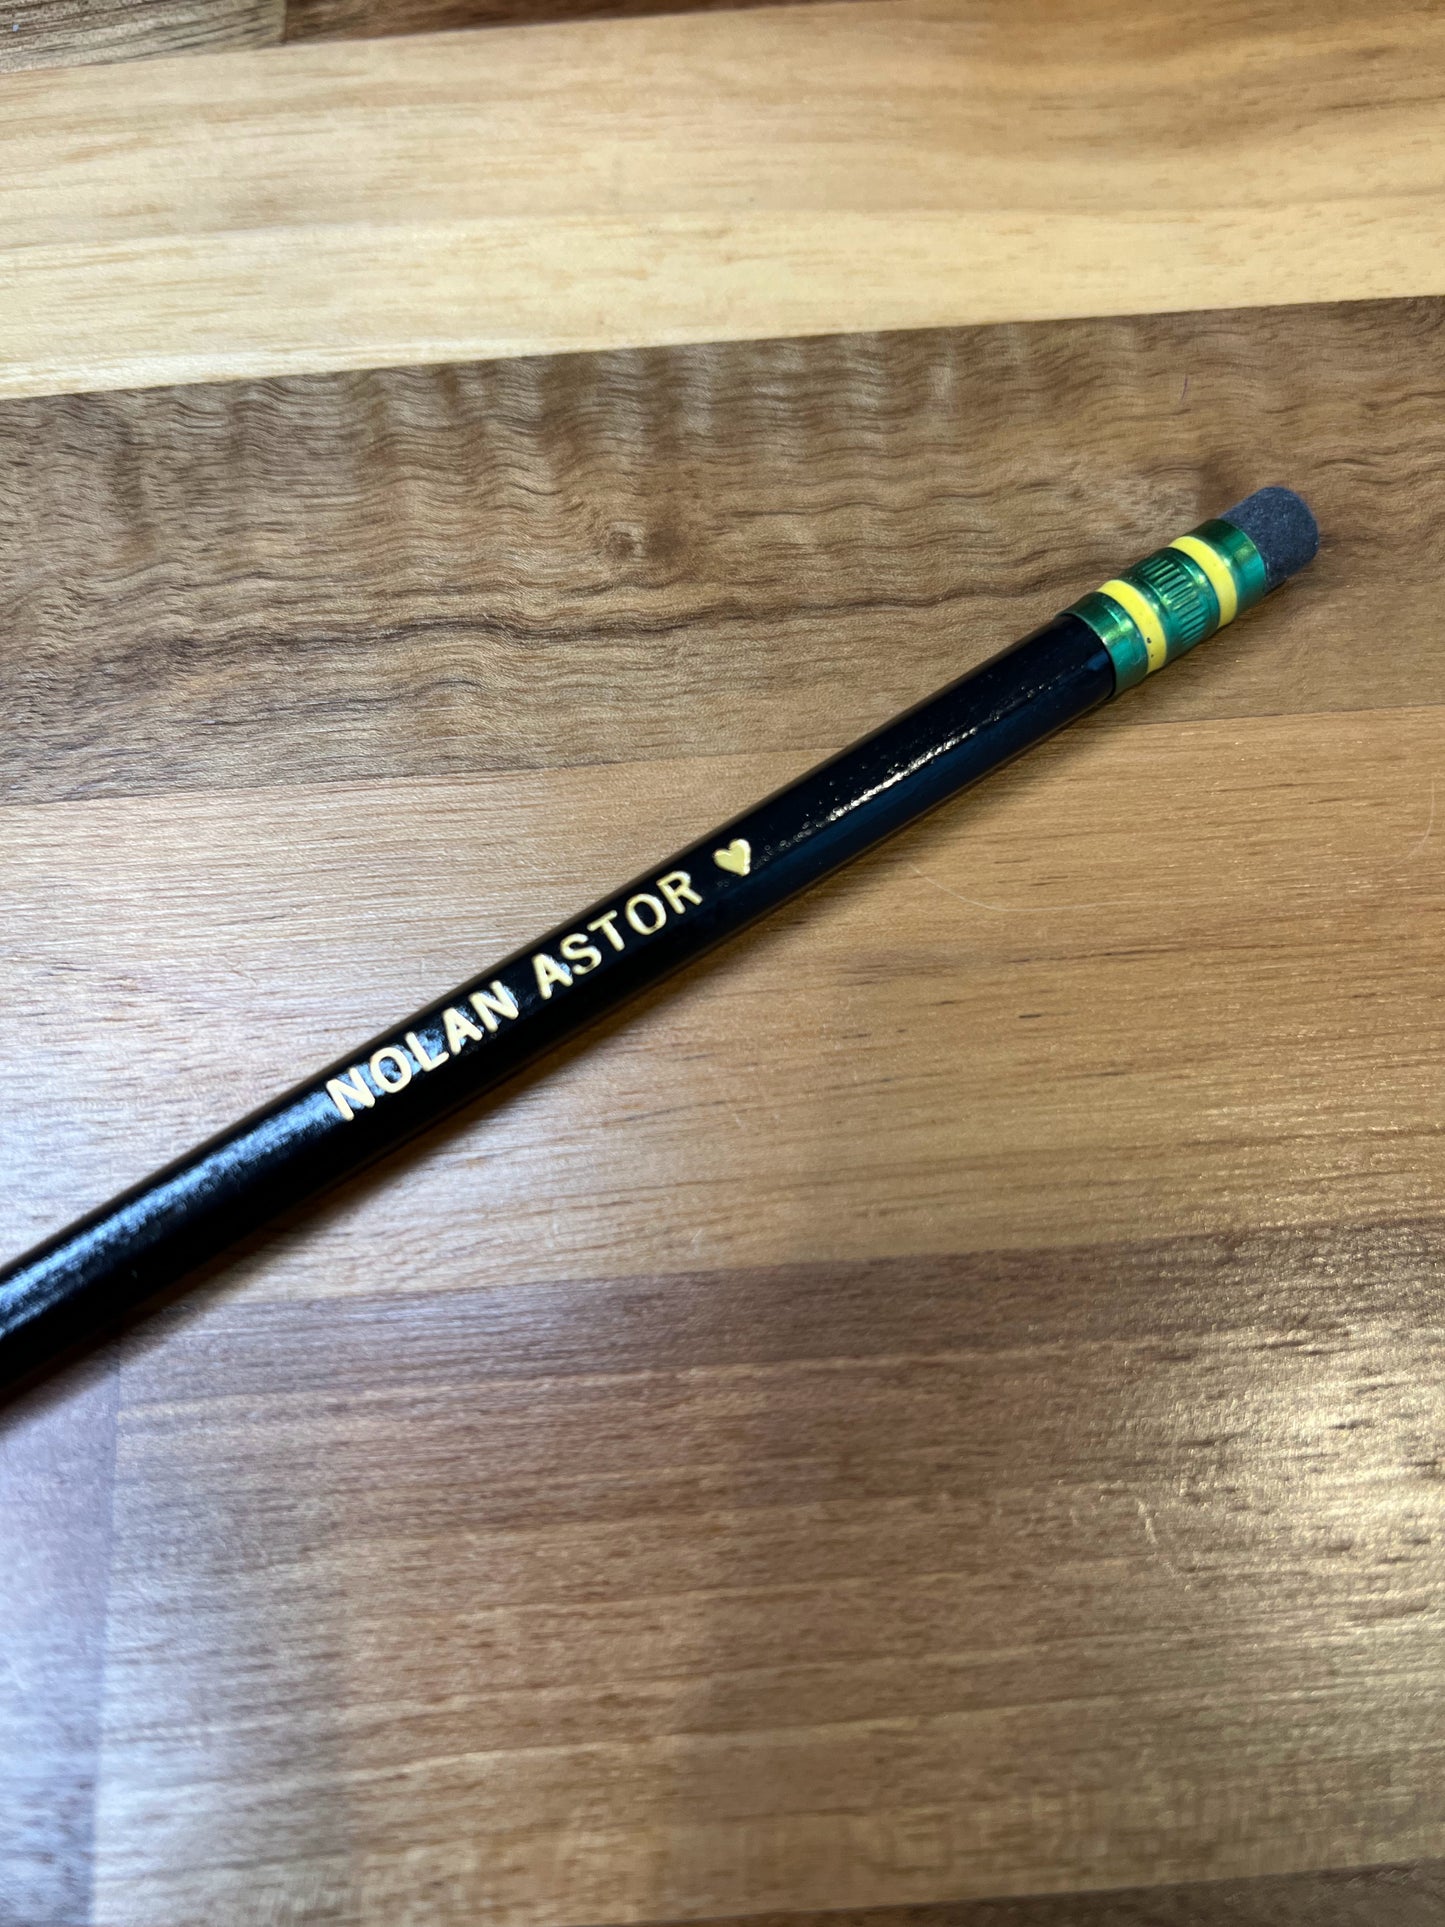 Nolan Astor pencil